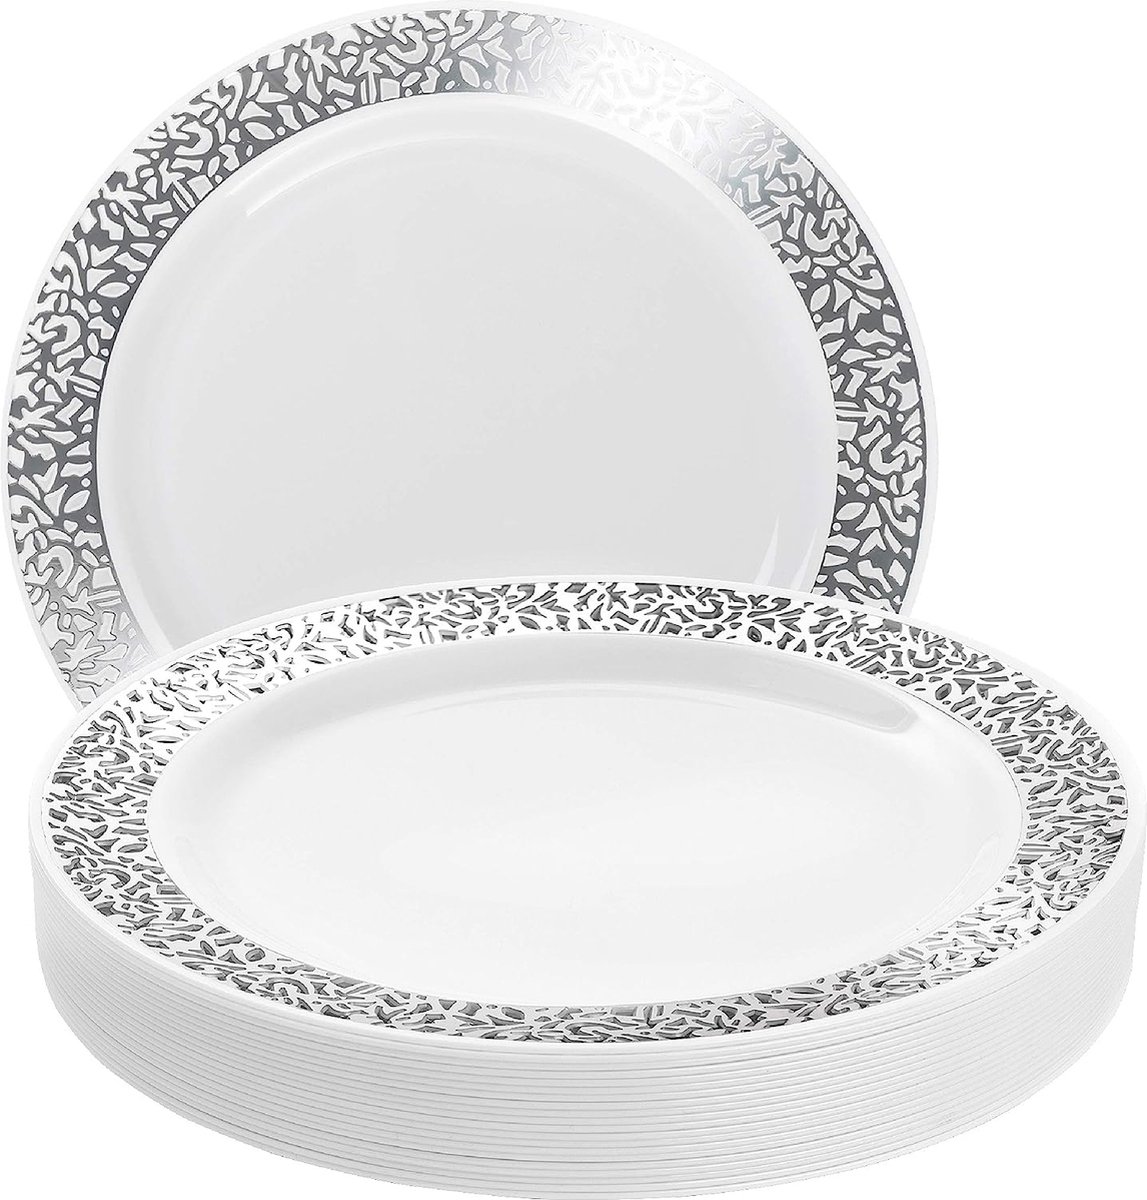 20 Witte Plastic Borden met Zilveren Rand (26cm), Feestbordjes voor Bruiloften, Verjaardagen, Dopen, Kerstmis & Feesten - Stevig en Herbruikbaar